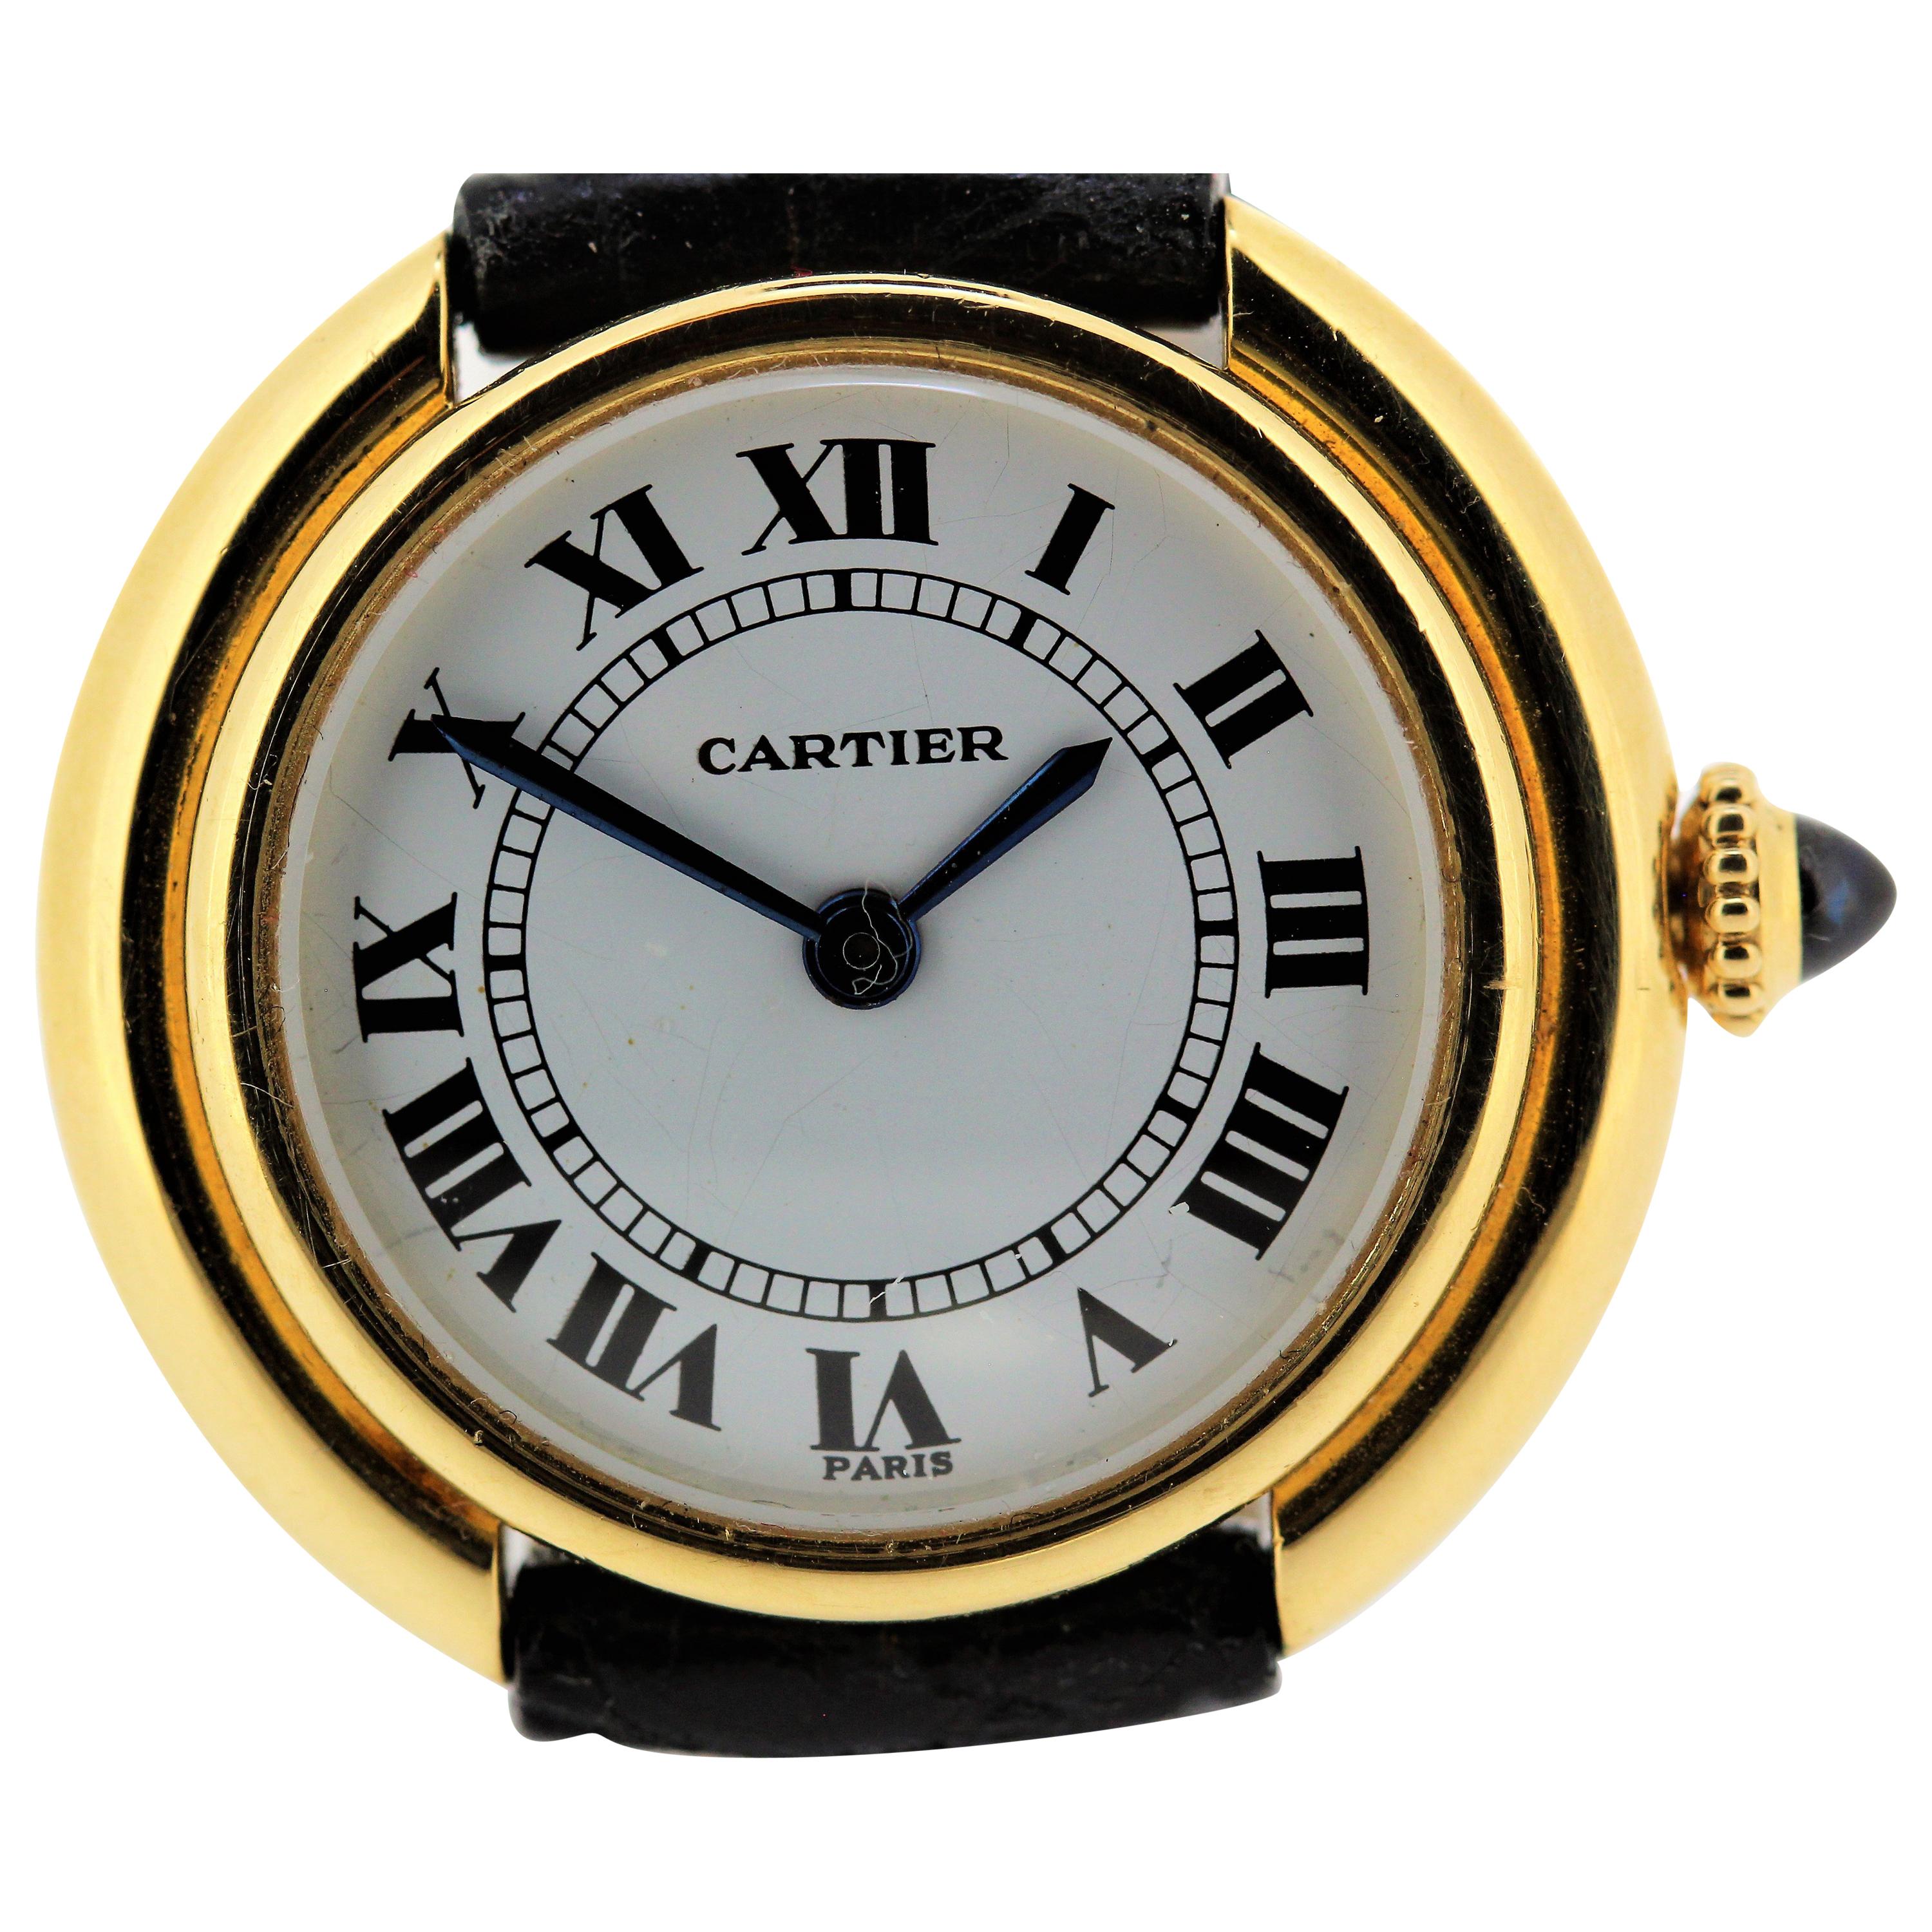 Cartier Paris Vendome Uhr, Handaufzug mit Handaufzug. Wahl zwischen schwarz oder römisch 